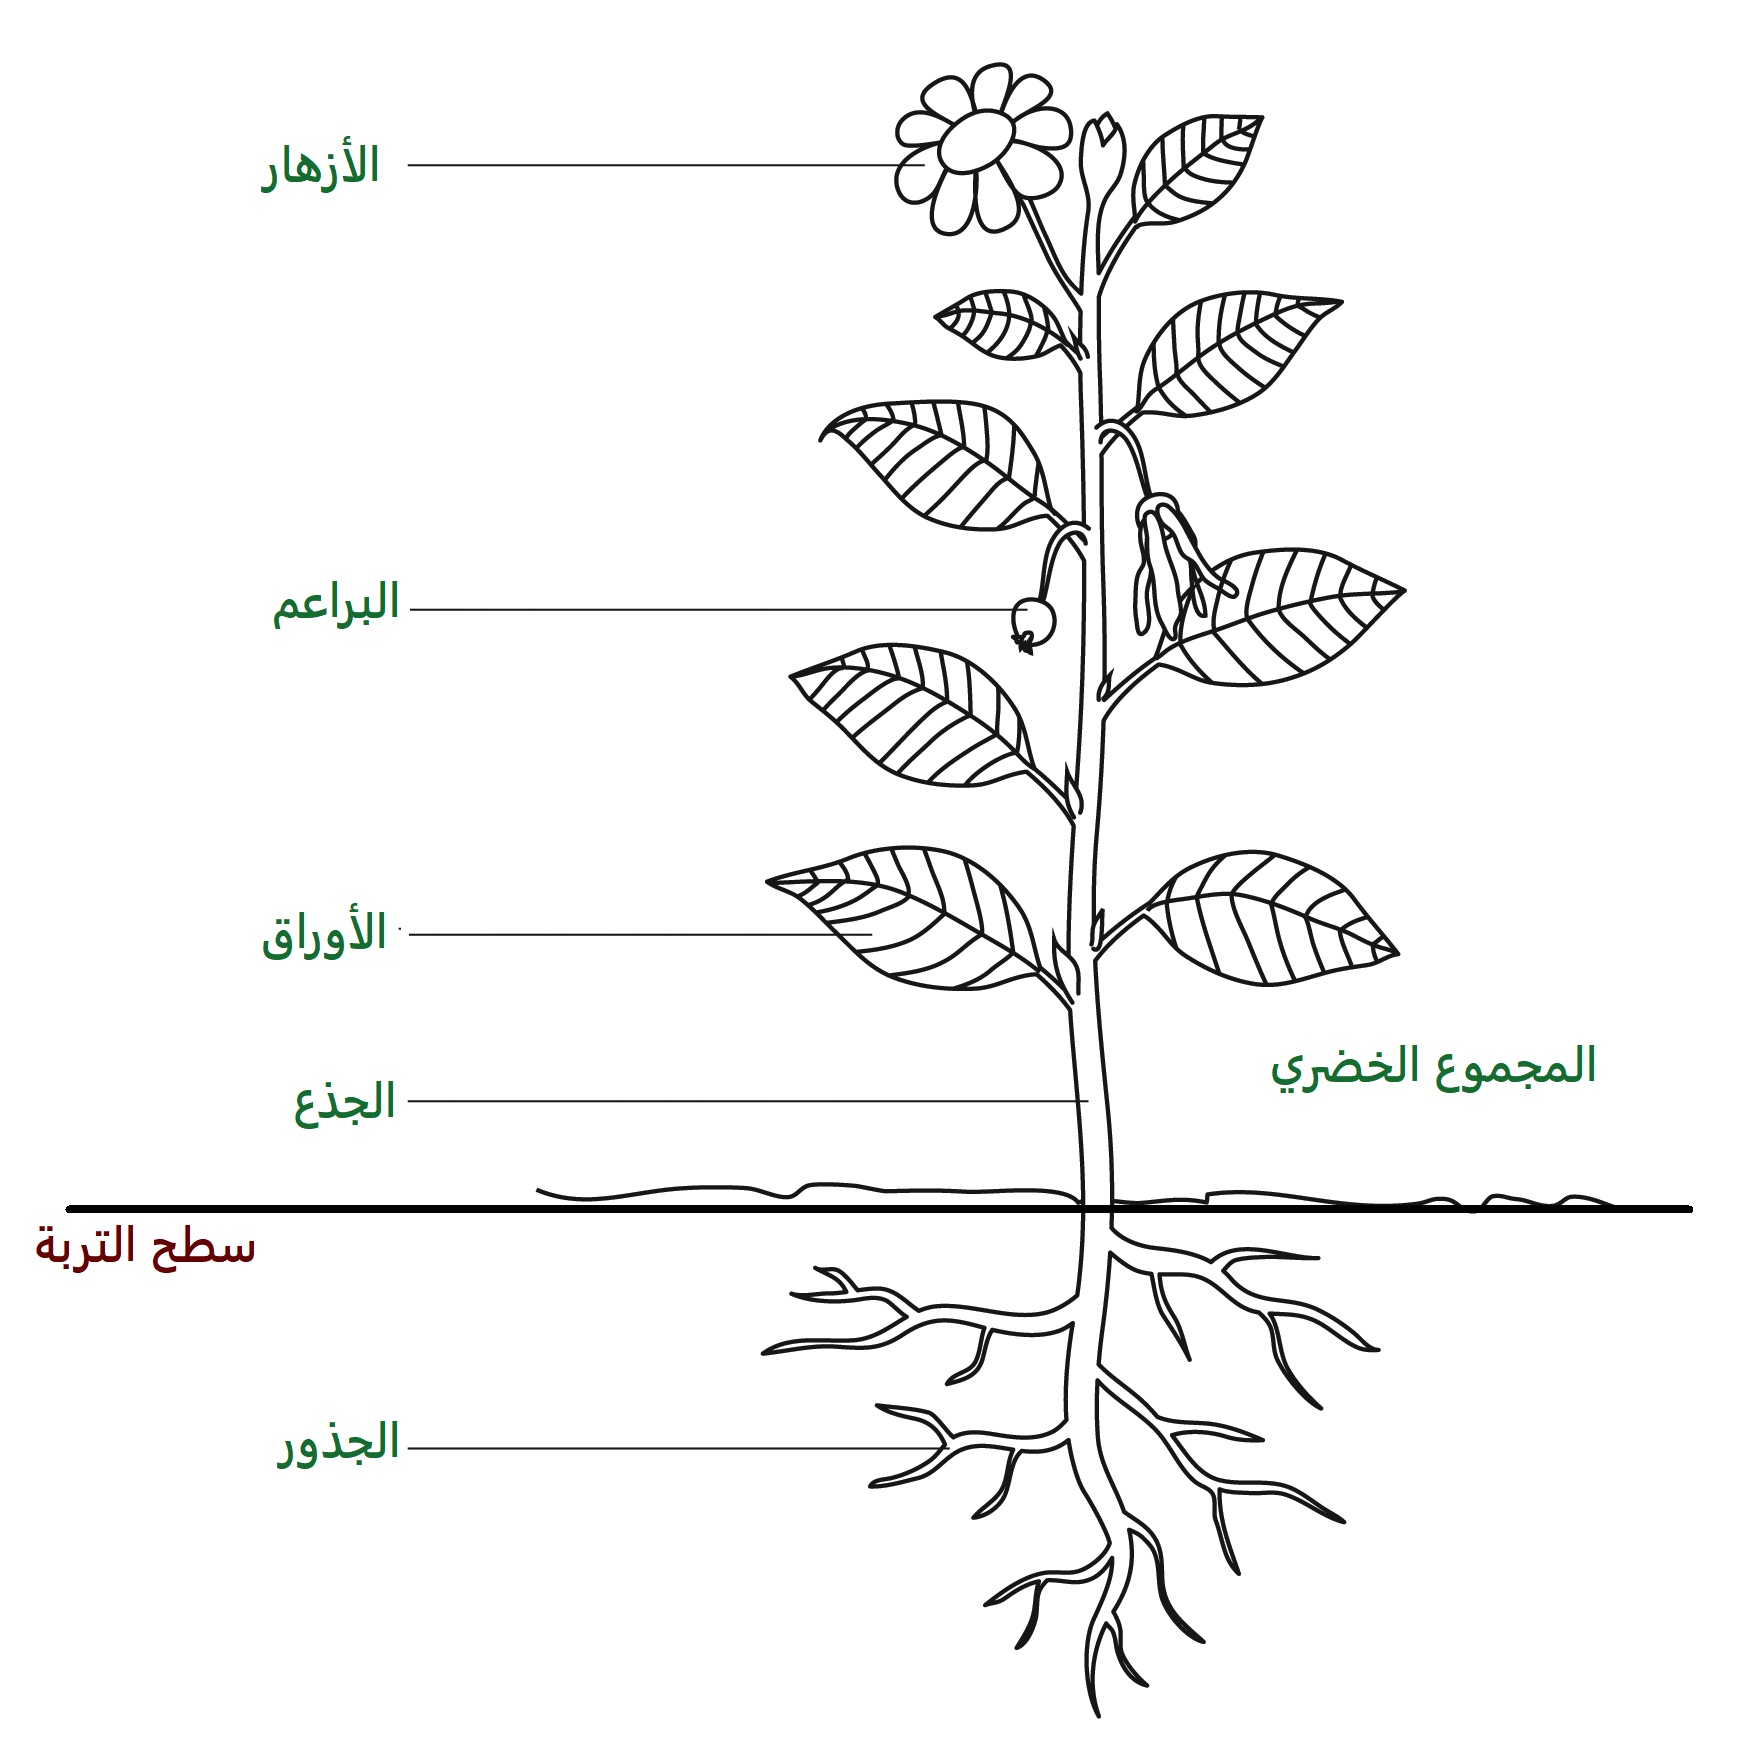 تعريف المجموع الخضري للنبات